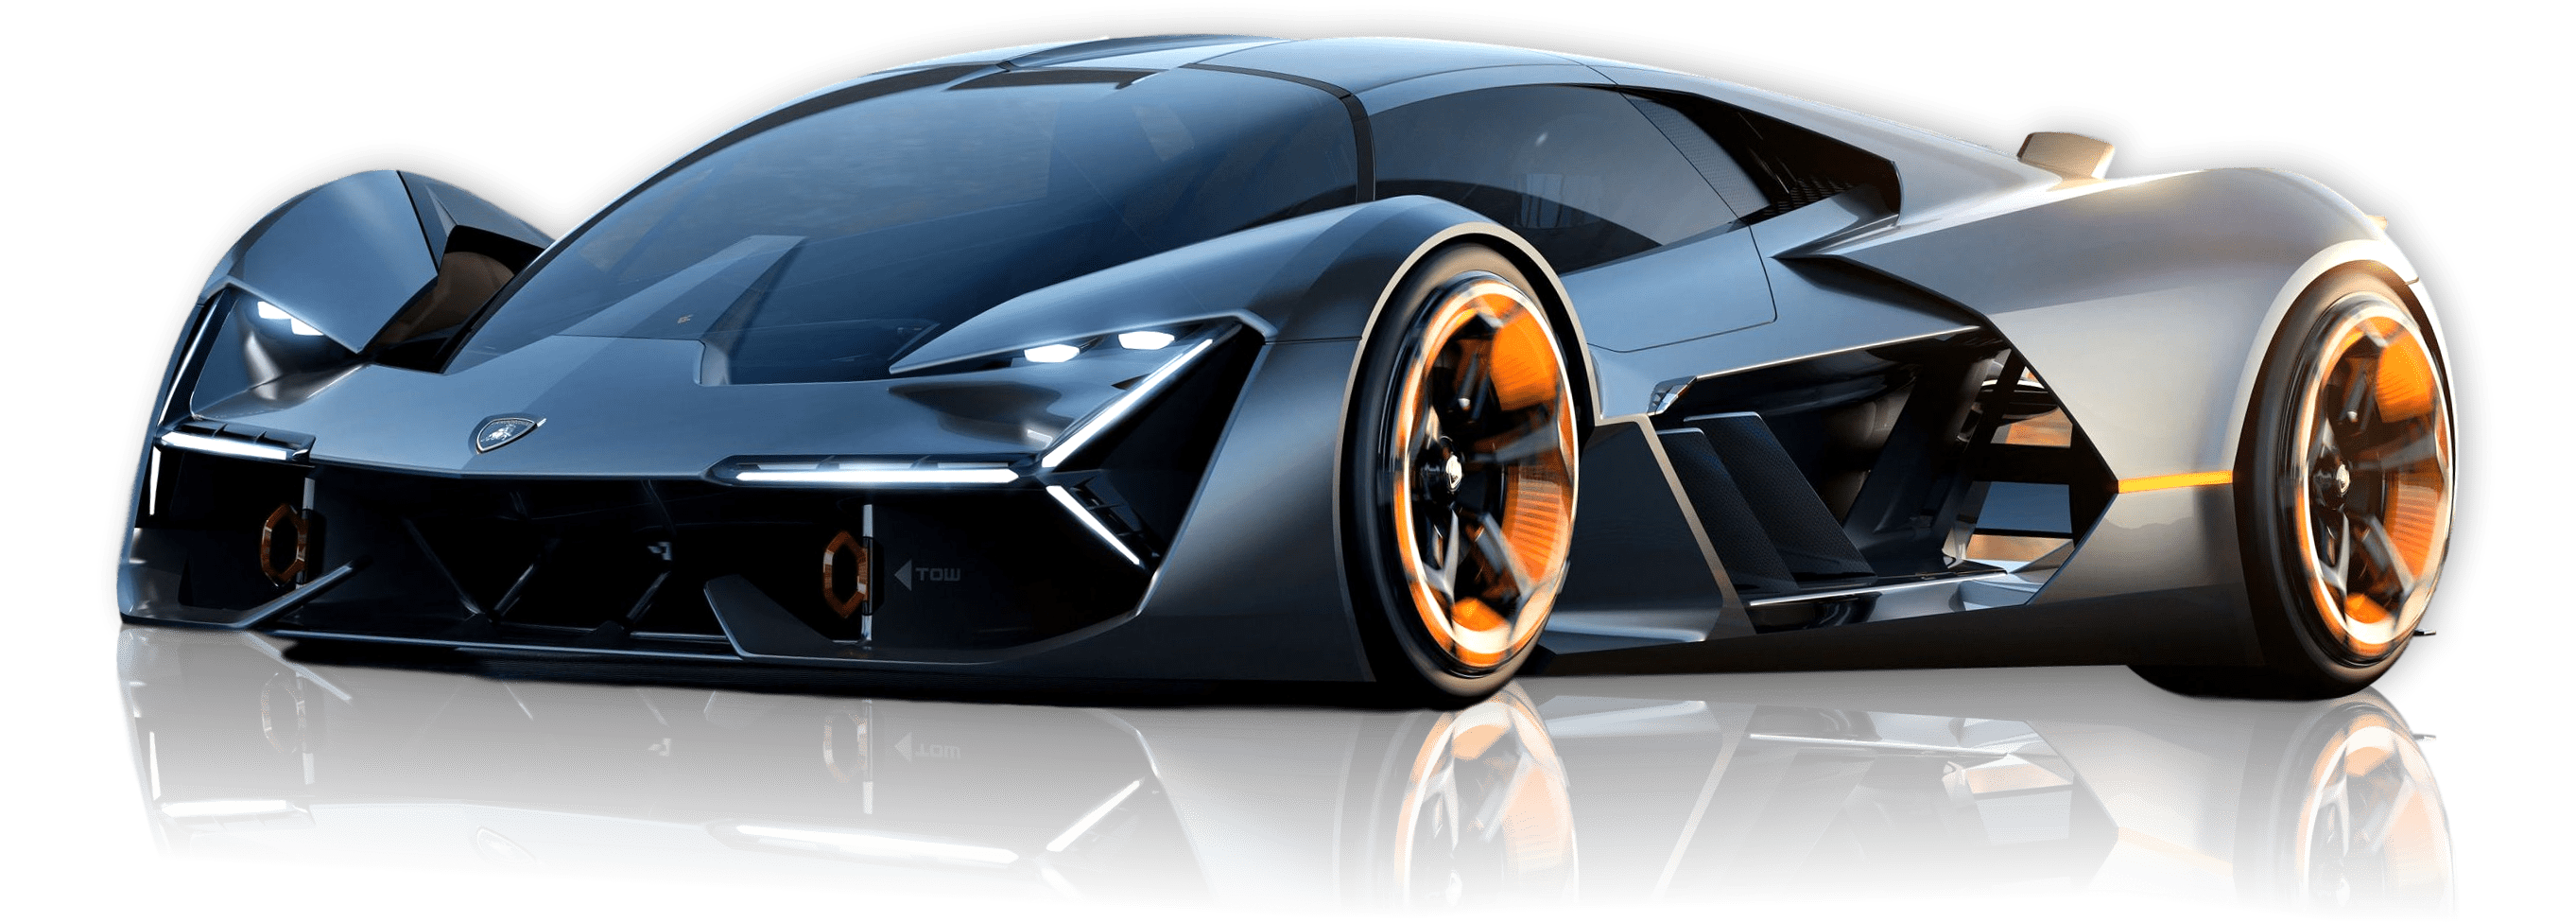 Lamborghini Terzo Millennio PNG Image